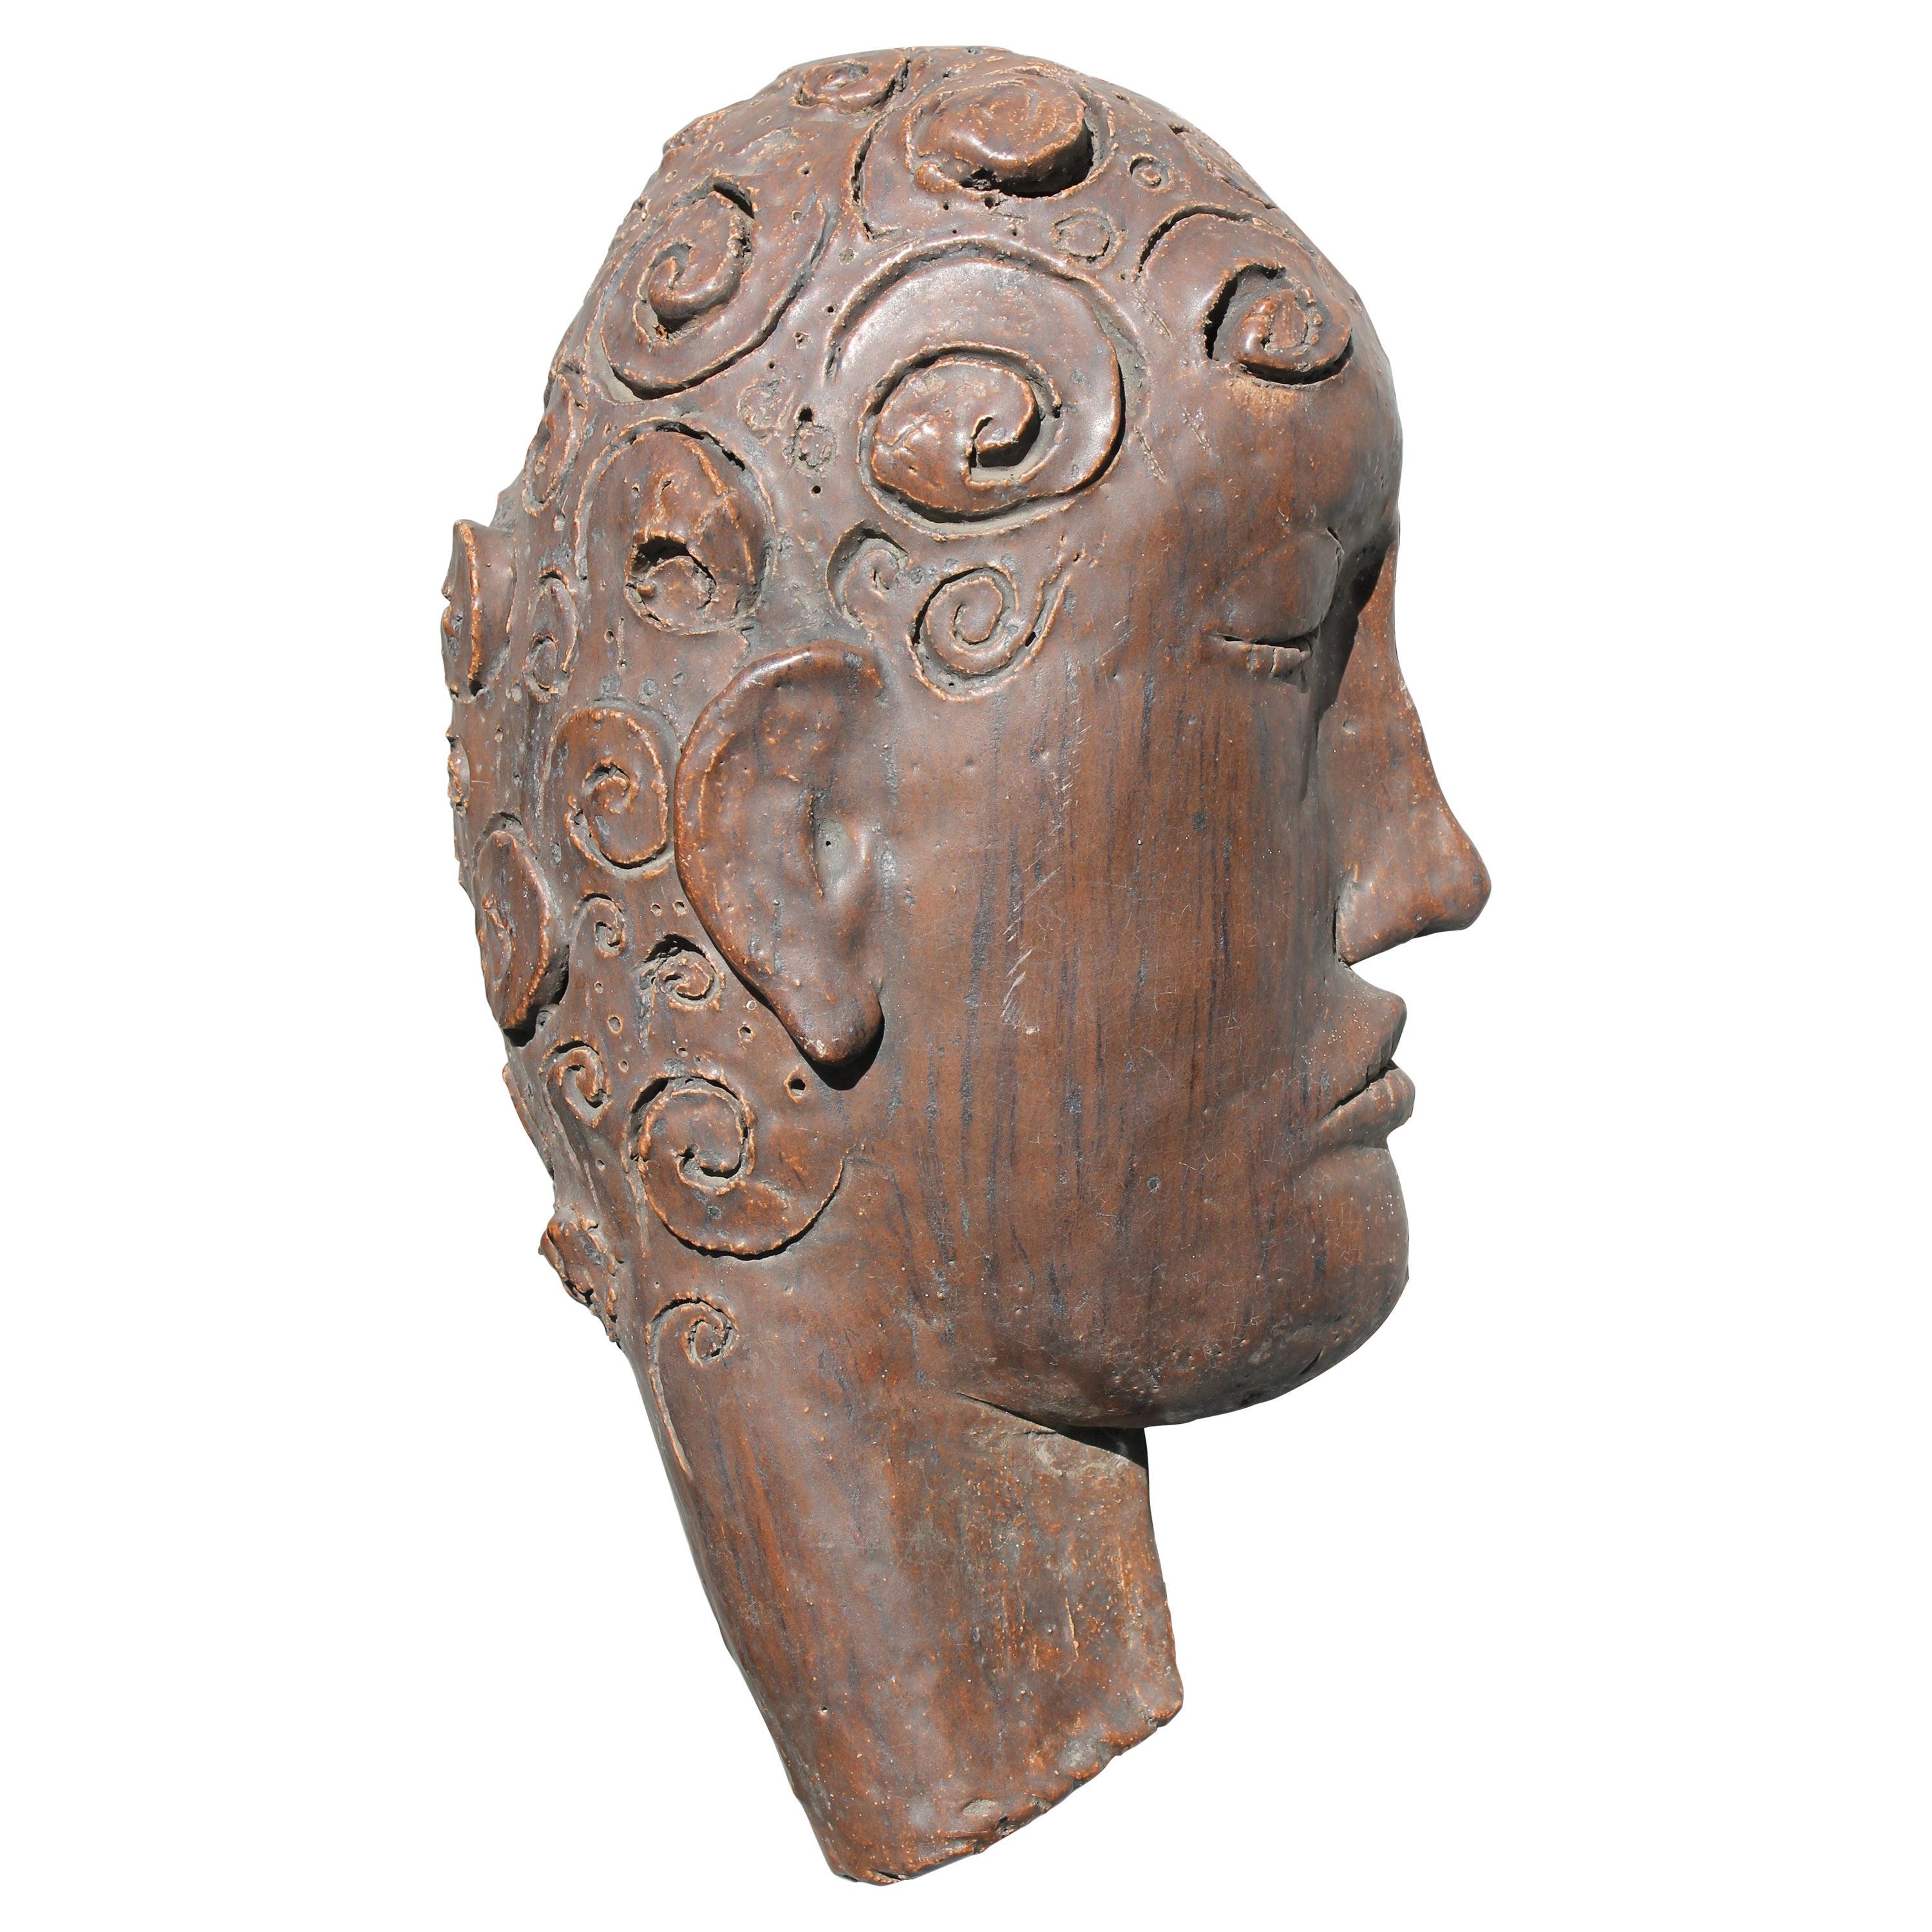 Sculpted Stoneware Face Sculpture by James Kouretas (1947-2016)